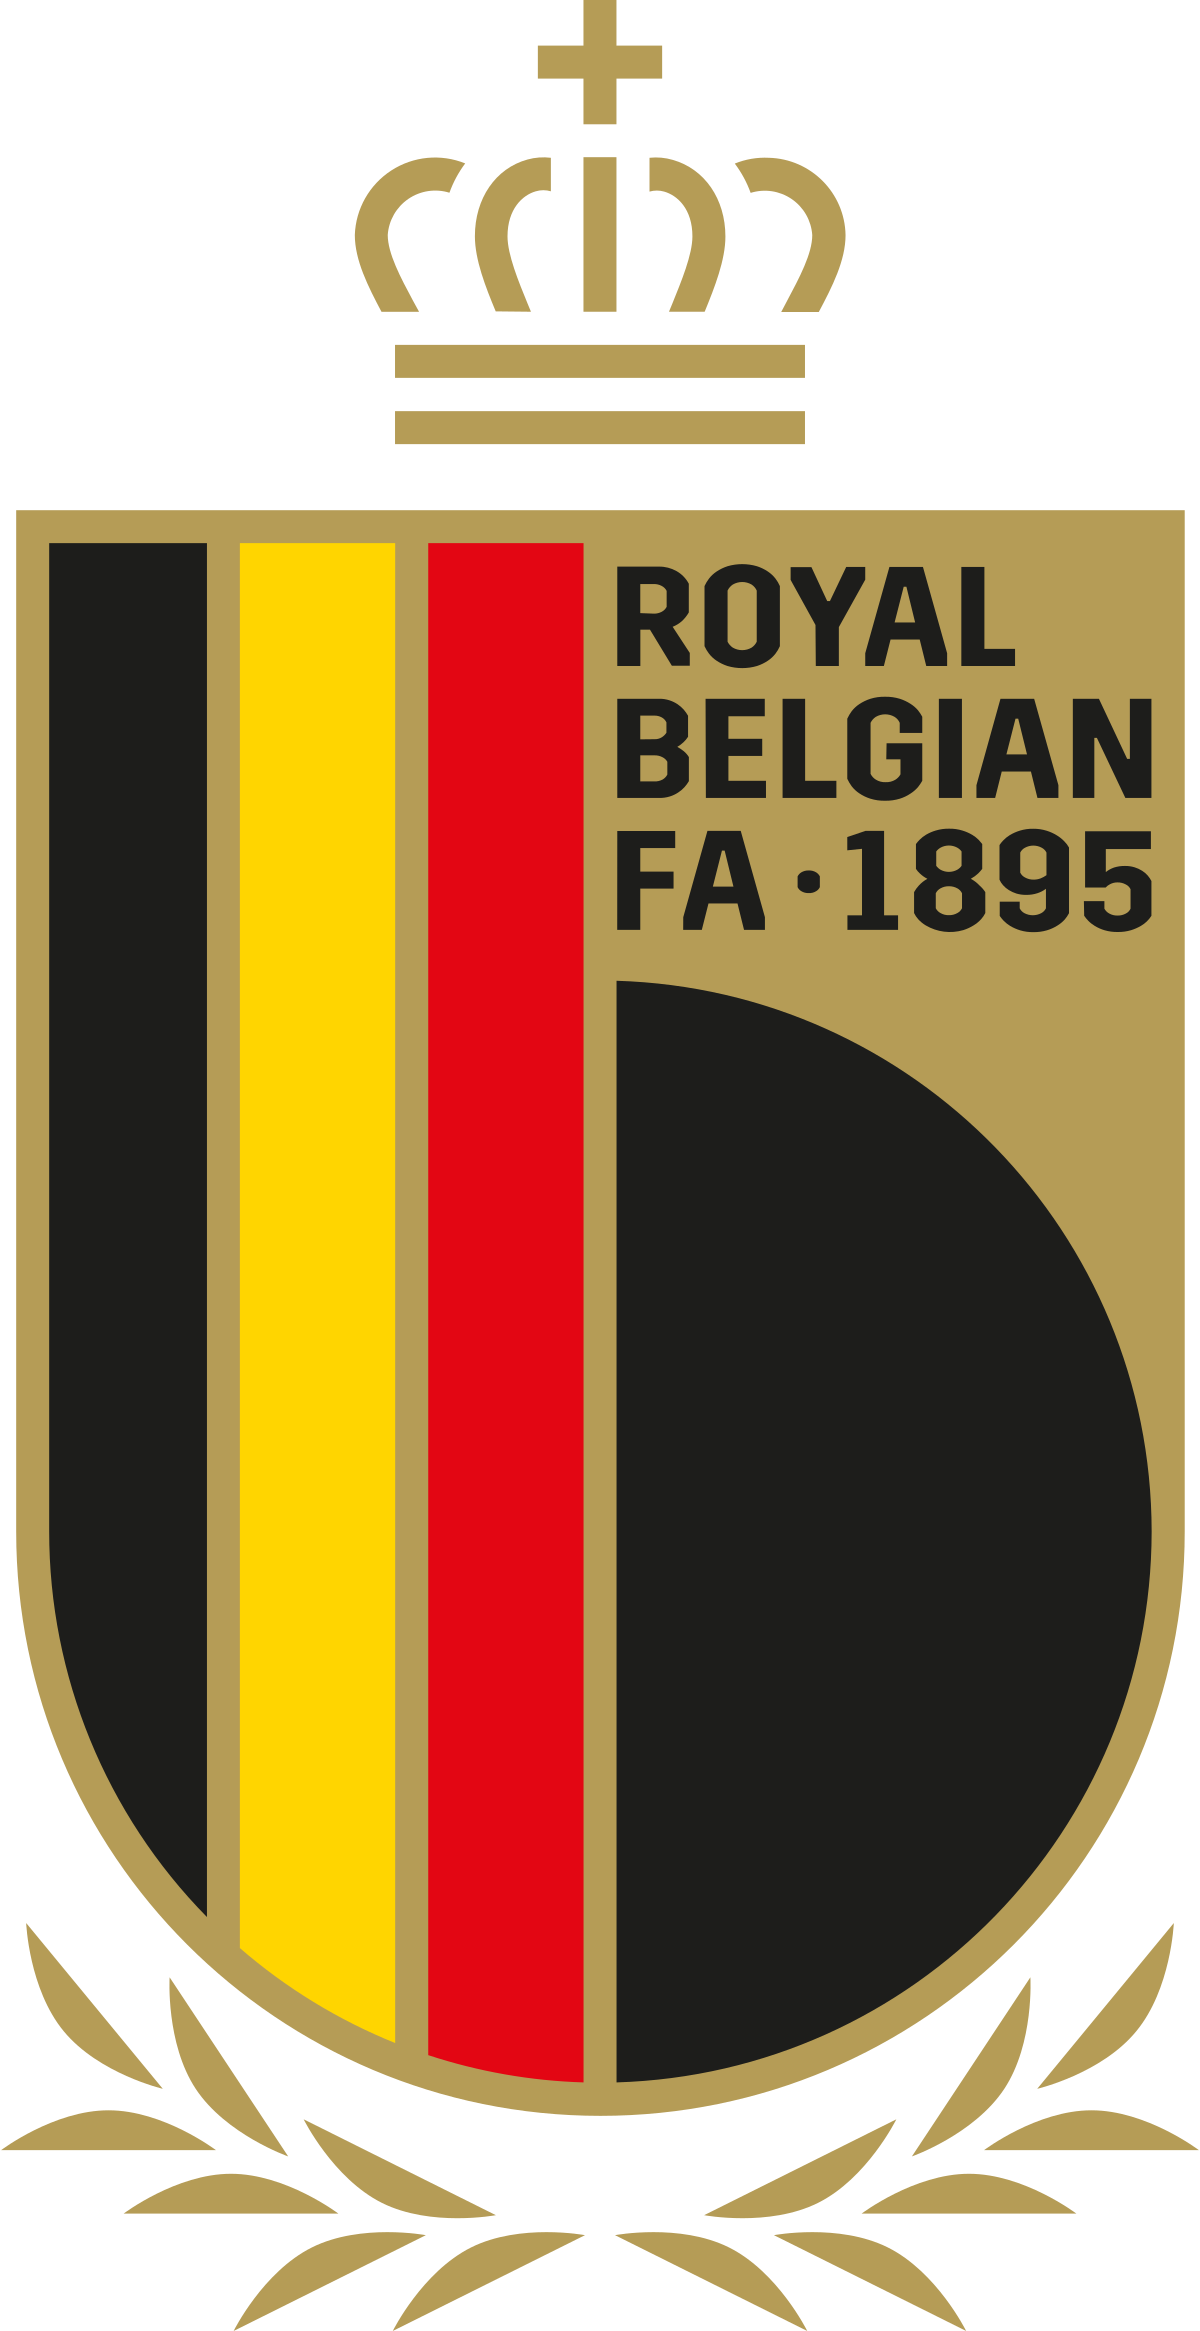 Đội tuyển bóng đá quốc gia Bỉ: Đội tuyển bóng đá quốc gia Bỉ là một trong những đội bóng được xem là đang trên đà phát triển mạnh mẽ nhất tại khu vực châu Âu. Với những cầu thủ tài năng và tinh thần chiến đấu cao, đội tuyển Bỉ đang trở thành một thế lực mới trong làng bóng đá quốc tế.